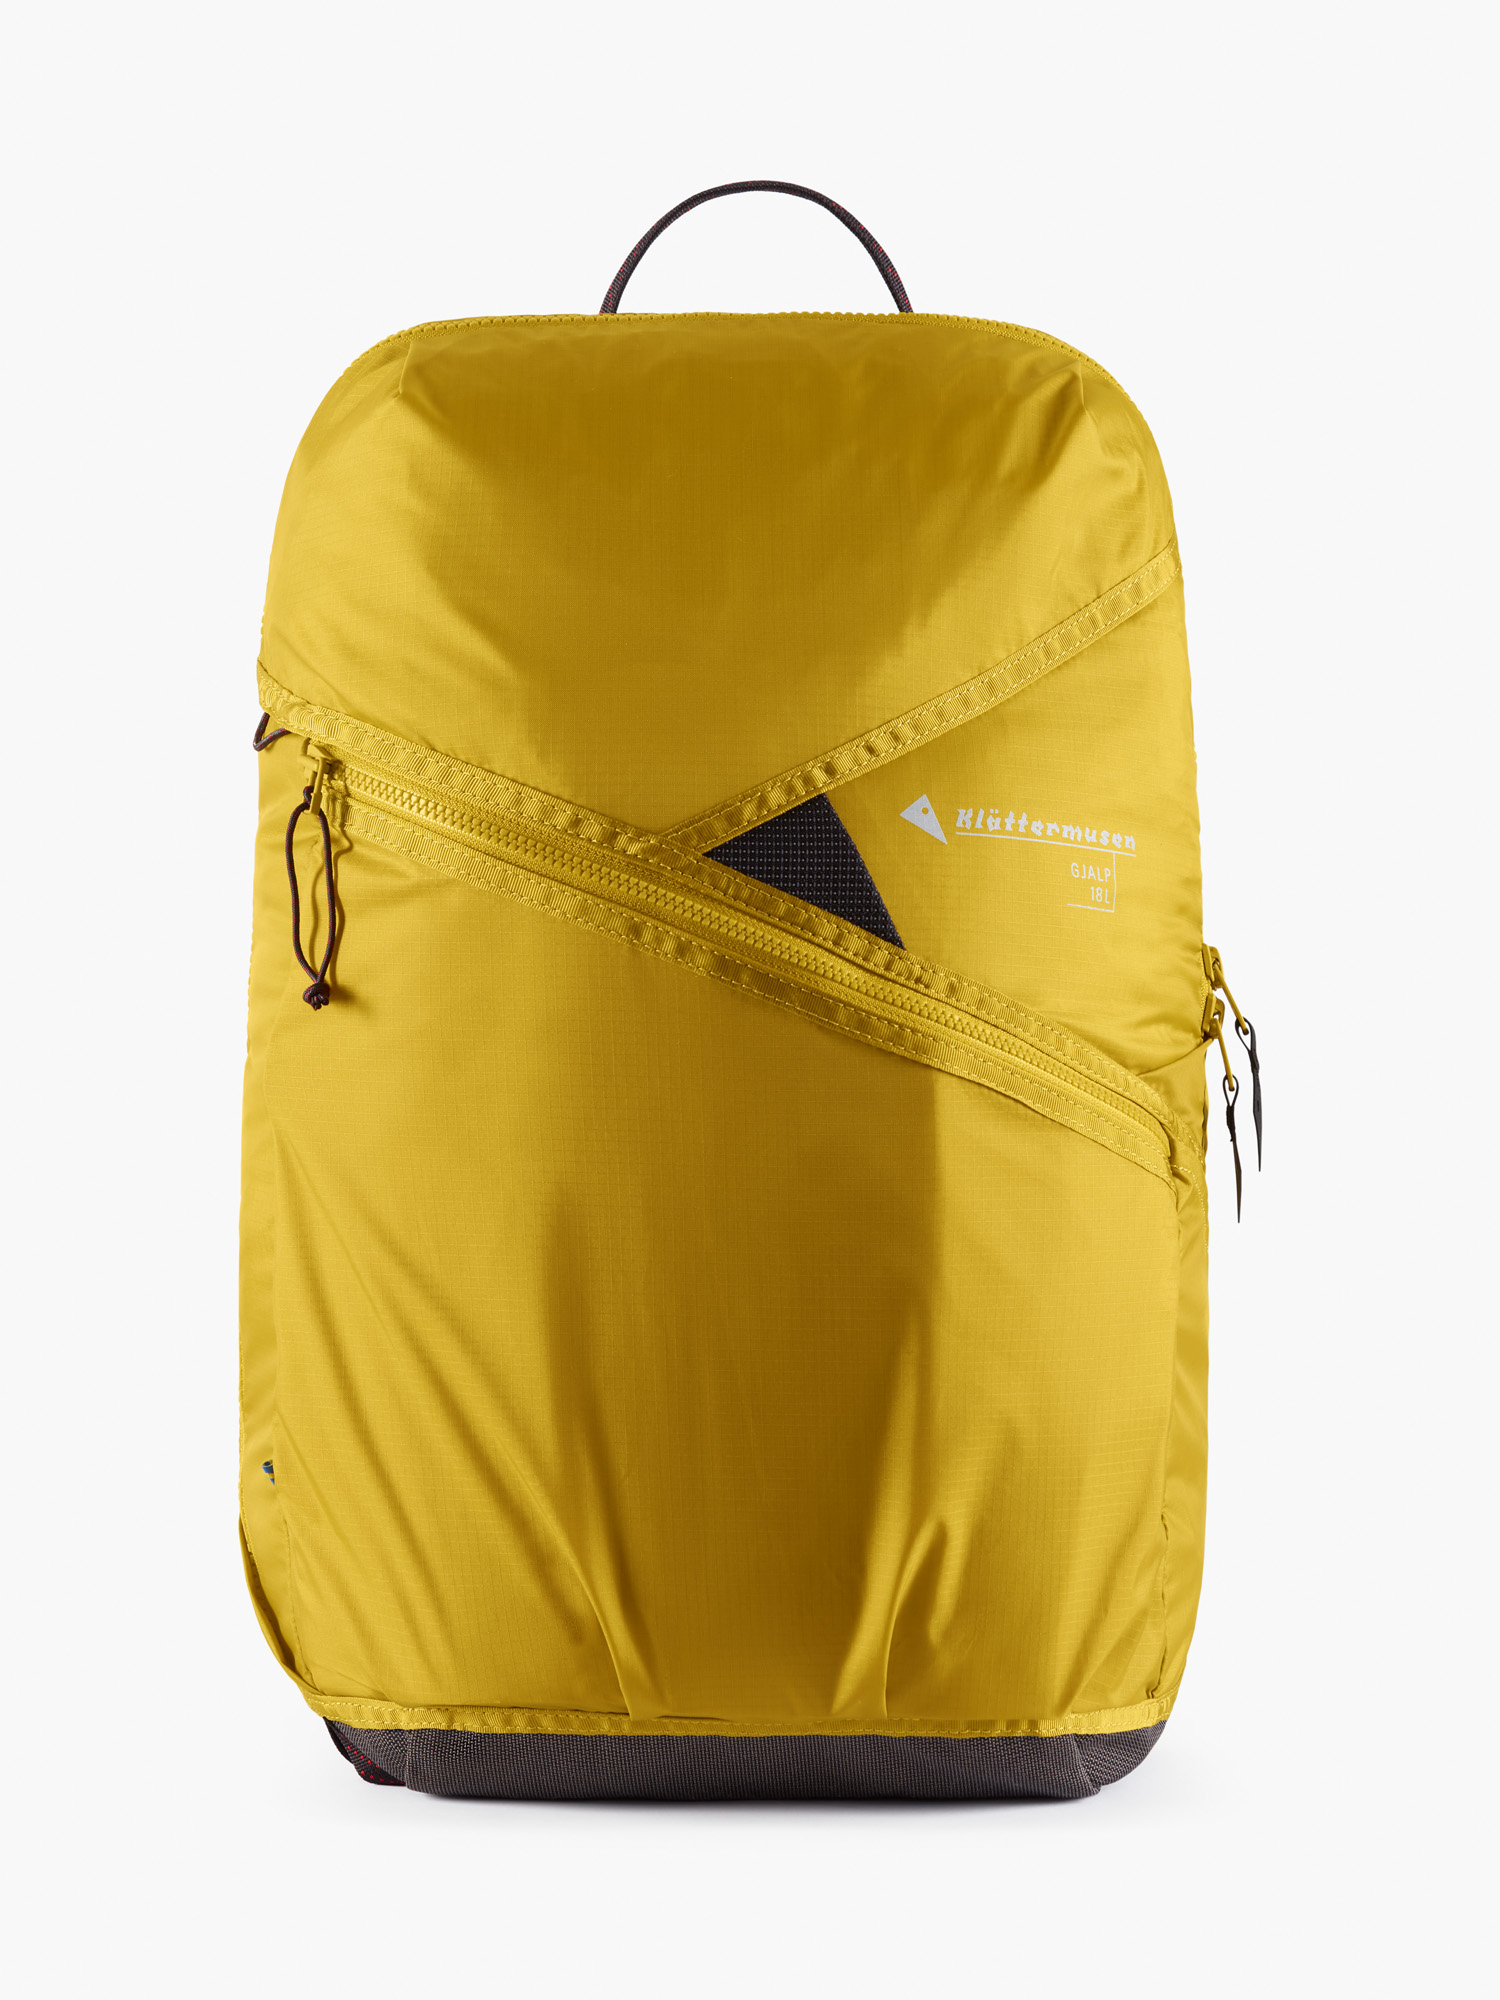 40456U21 - Gjalp Backpack 18L - Gold